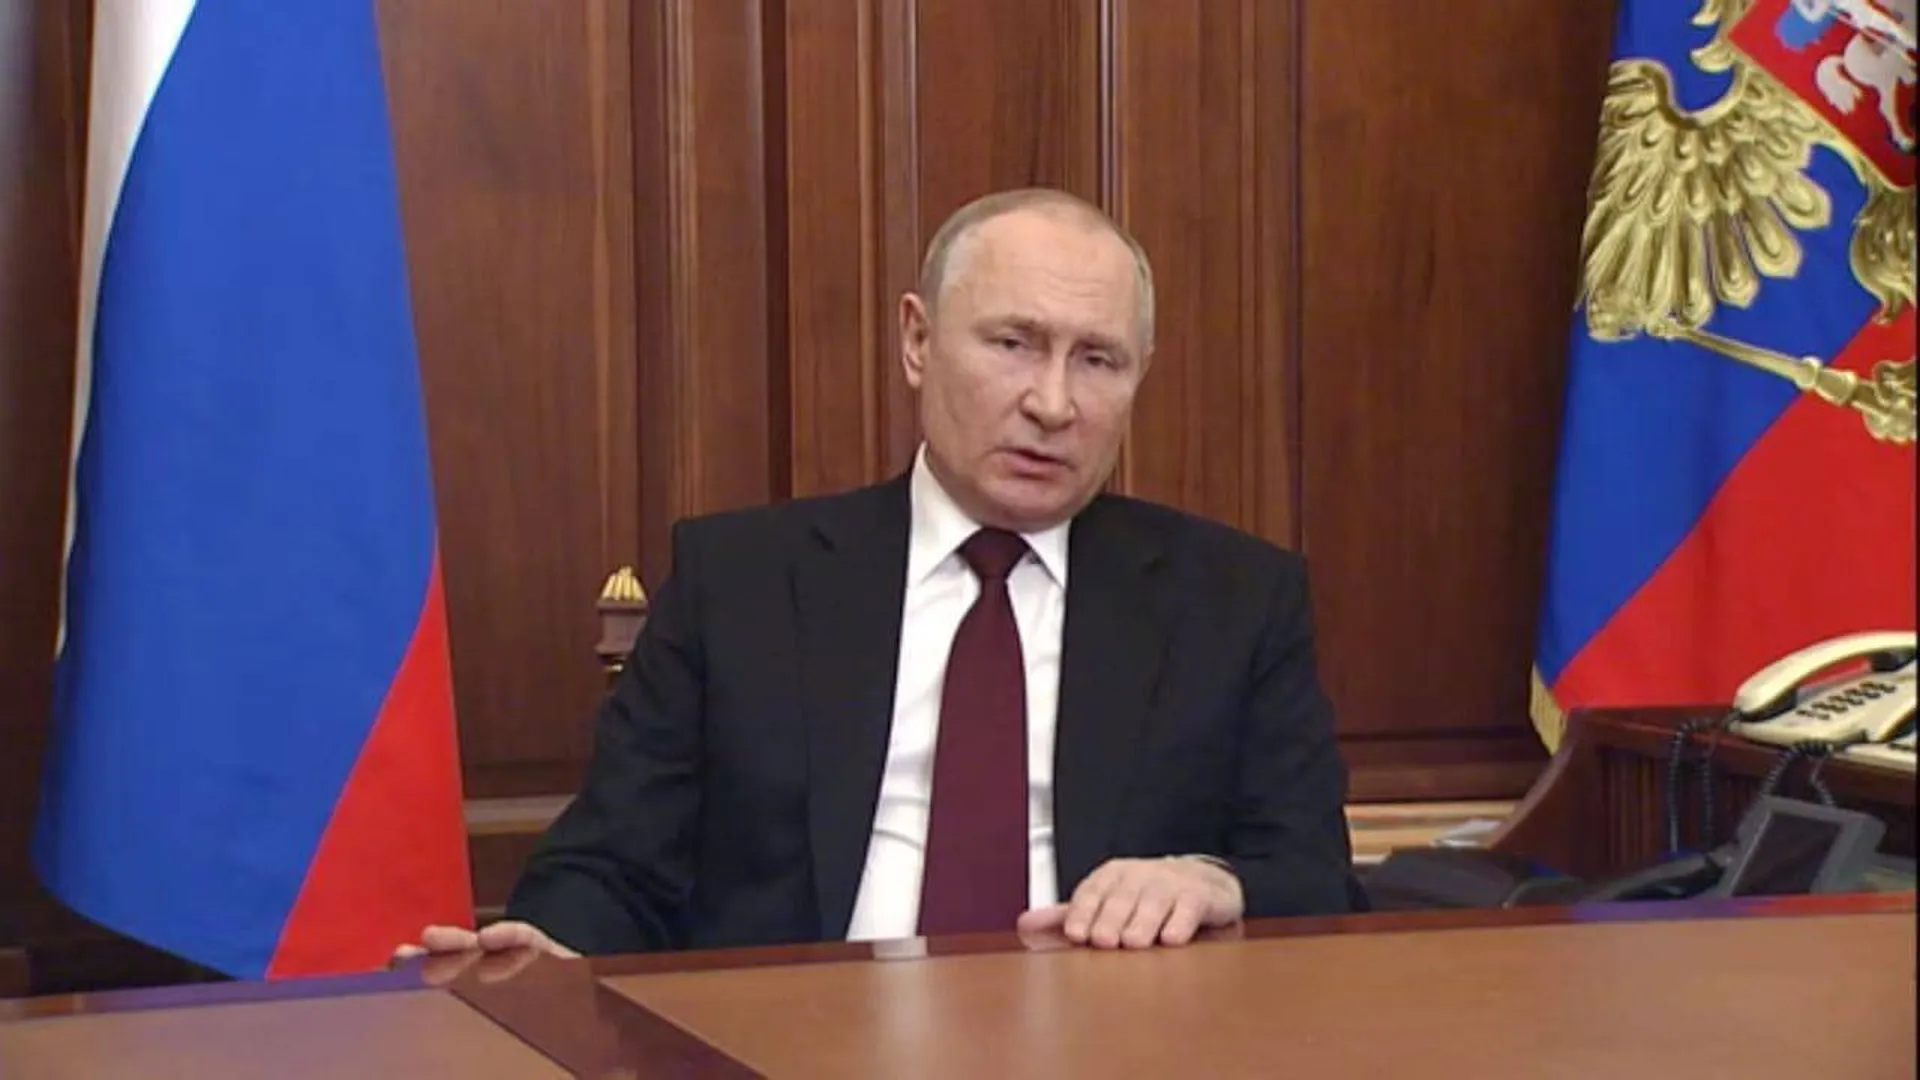 Путин: в планы России не входит оккупация Украины. Краткий пересказ обращения президента